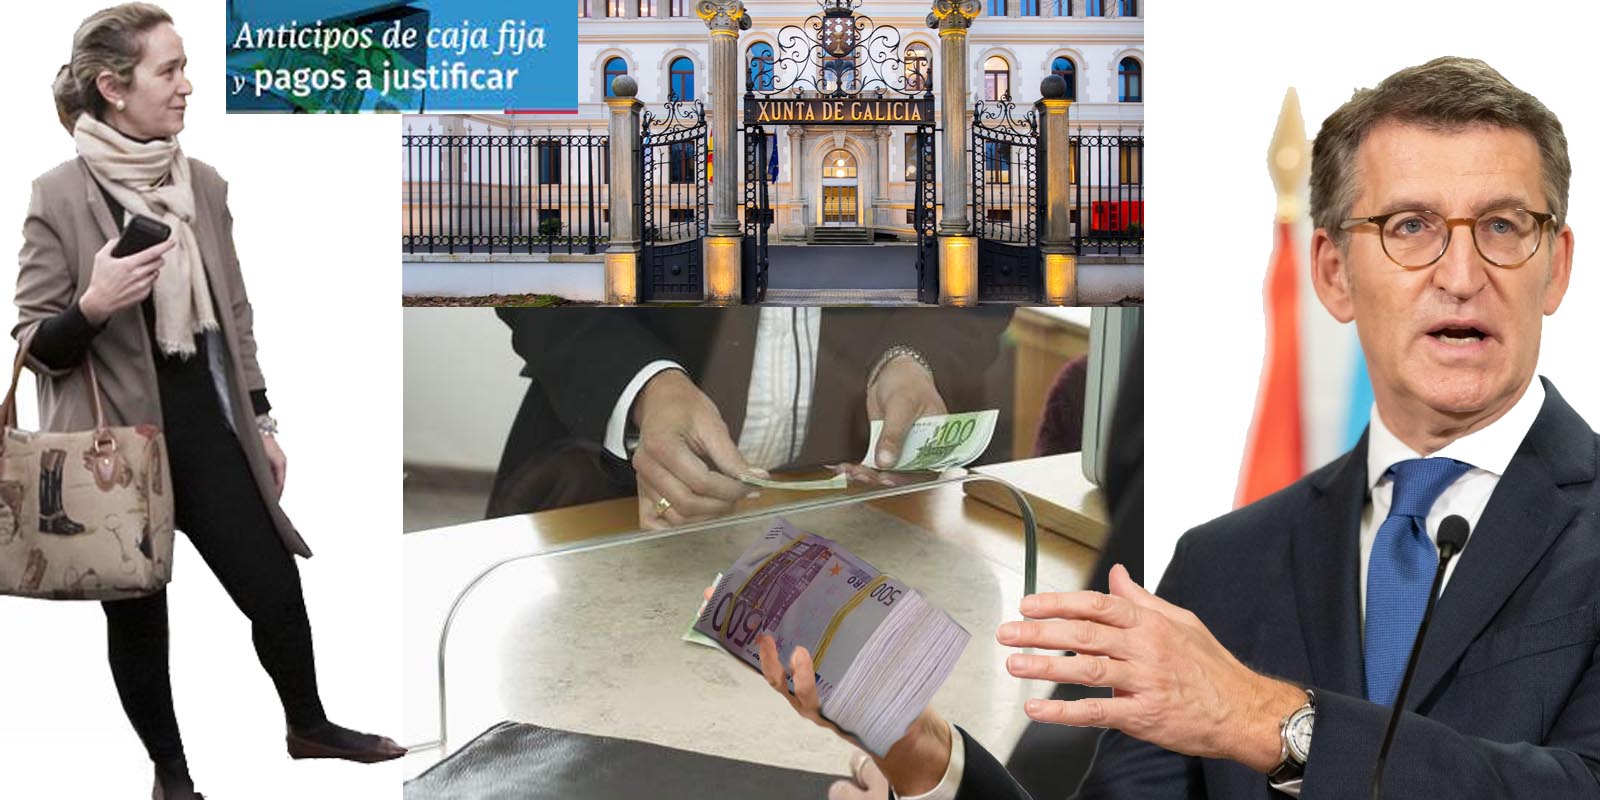 Feijóo y Mar Sánchez Sierra se niegan a explicar el dinero efectivo que  retiran de la Xunta mientras Hacienda afirma que tienen que demostrar su  procedencia. | Xornal Galicia